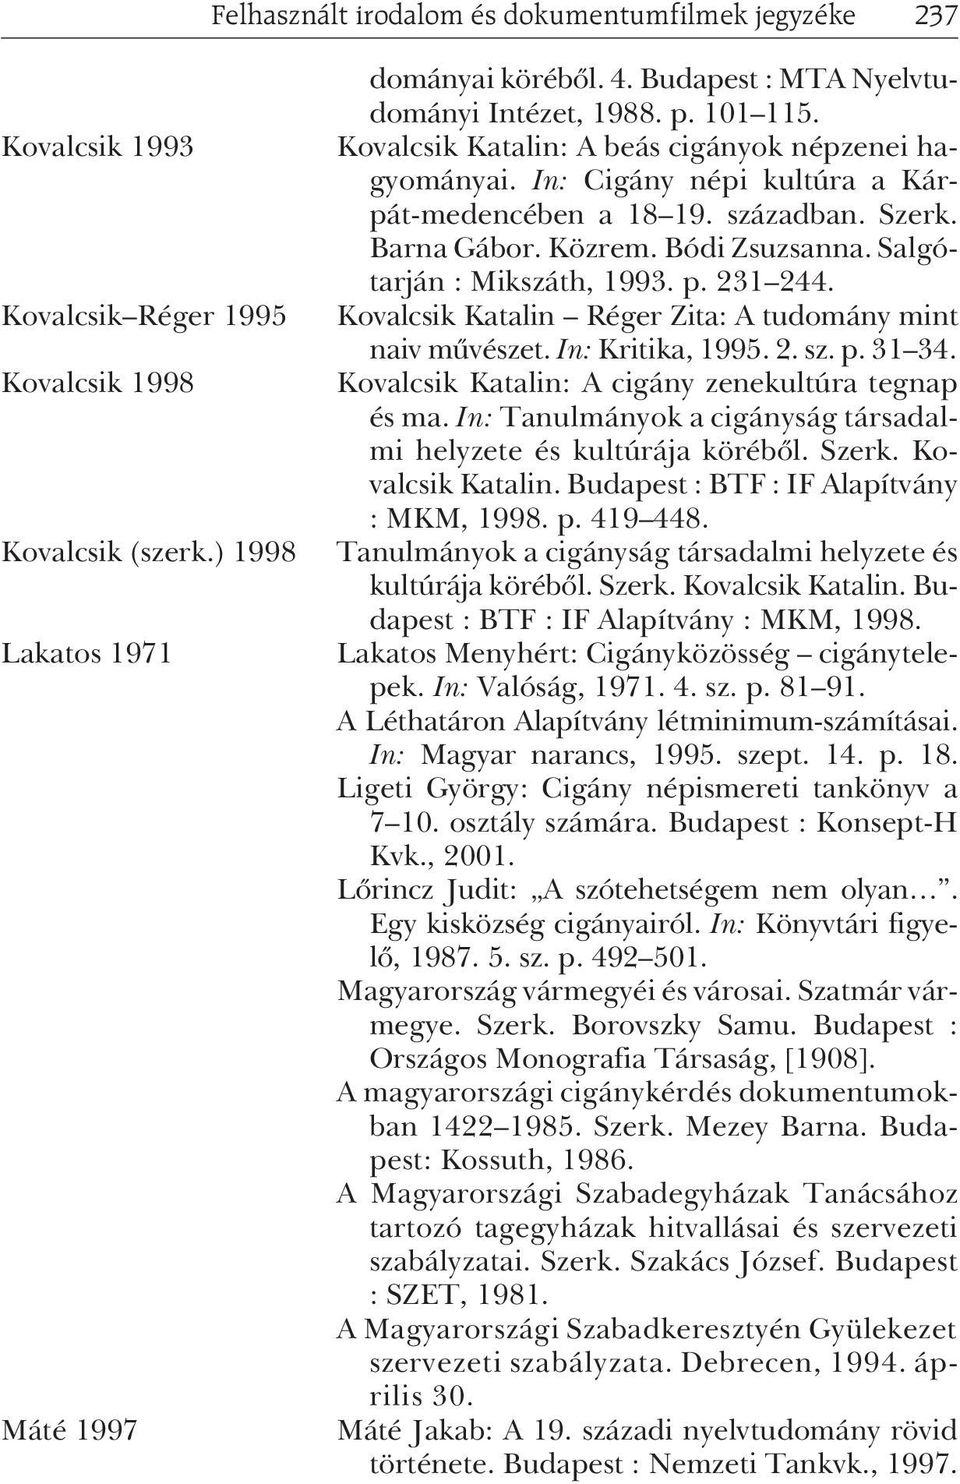 Közrem. Bódi Zsuzsanna. Salgótarján : Mikszáth, 1993. p. 231 244. Kovalcsik Katalin Réger Zita: A tudomány mint naiv mûvészet. In: Kritika, 1995. 2. sz. p. 31 34.